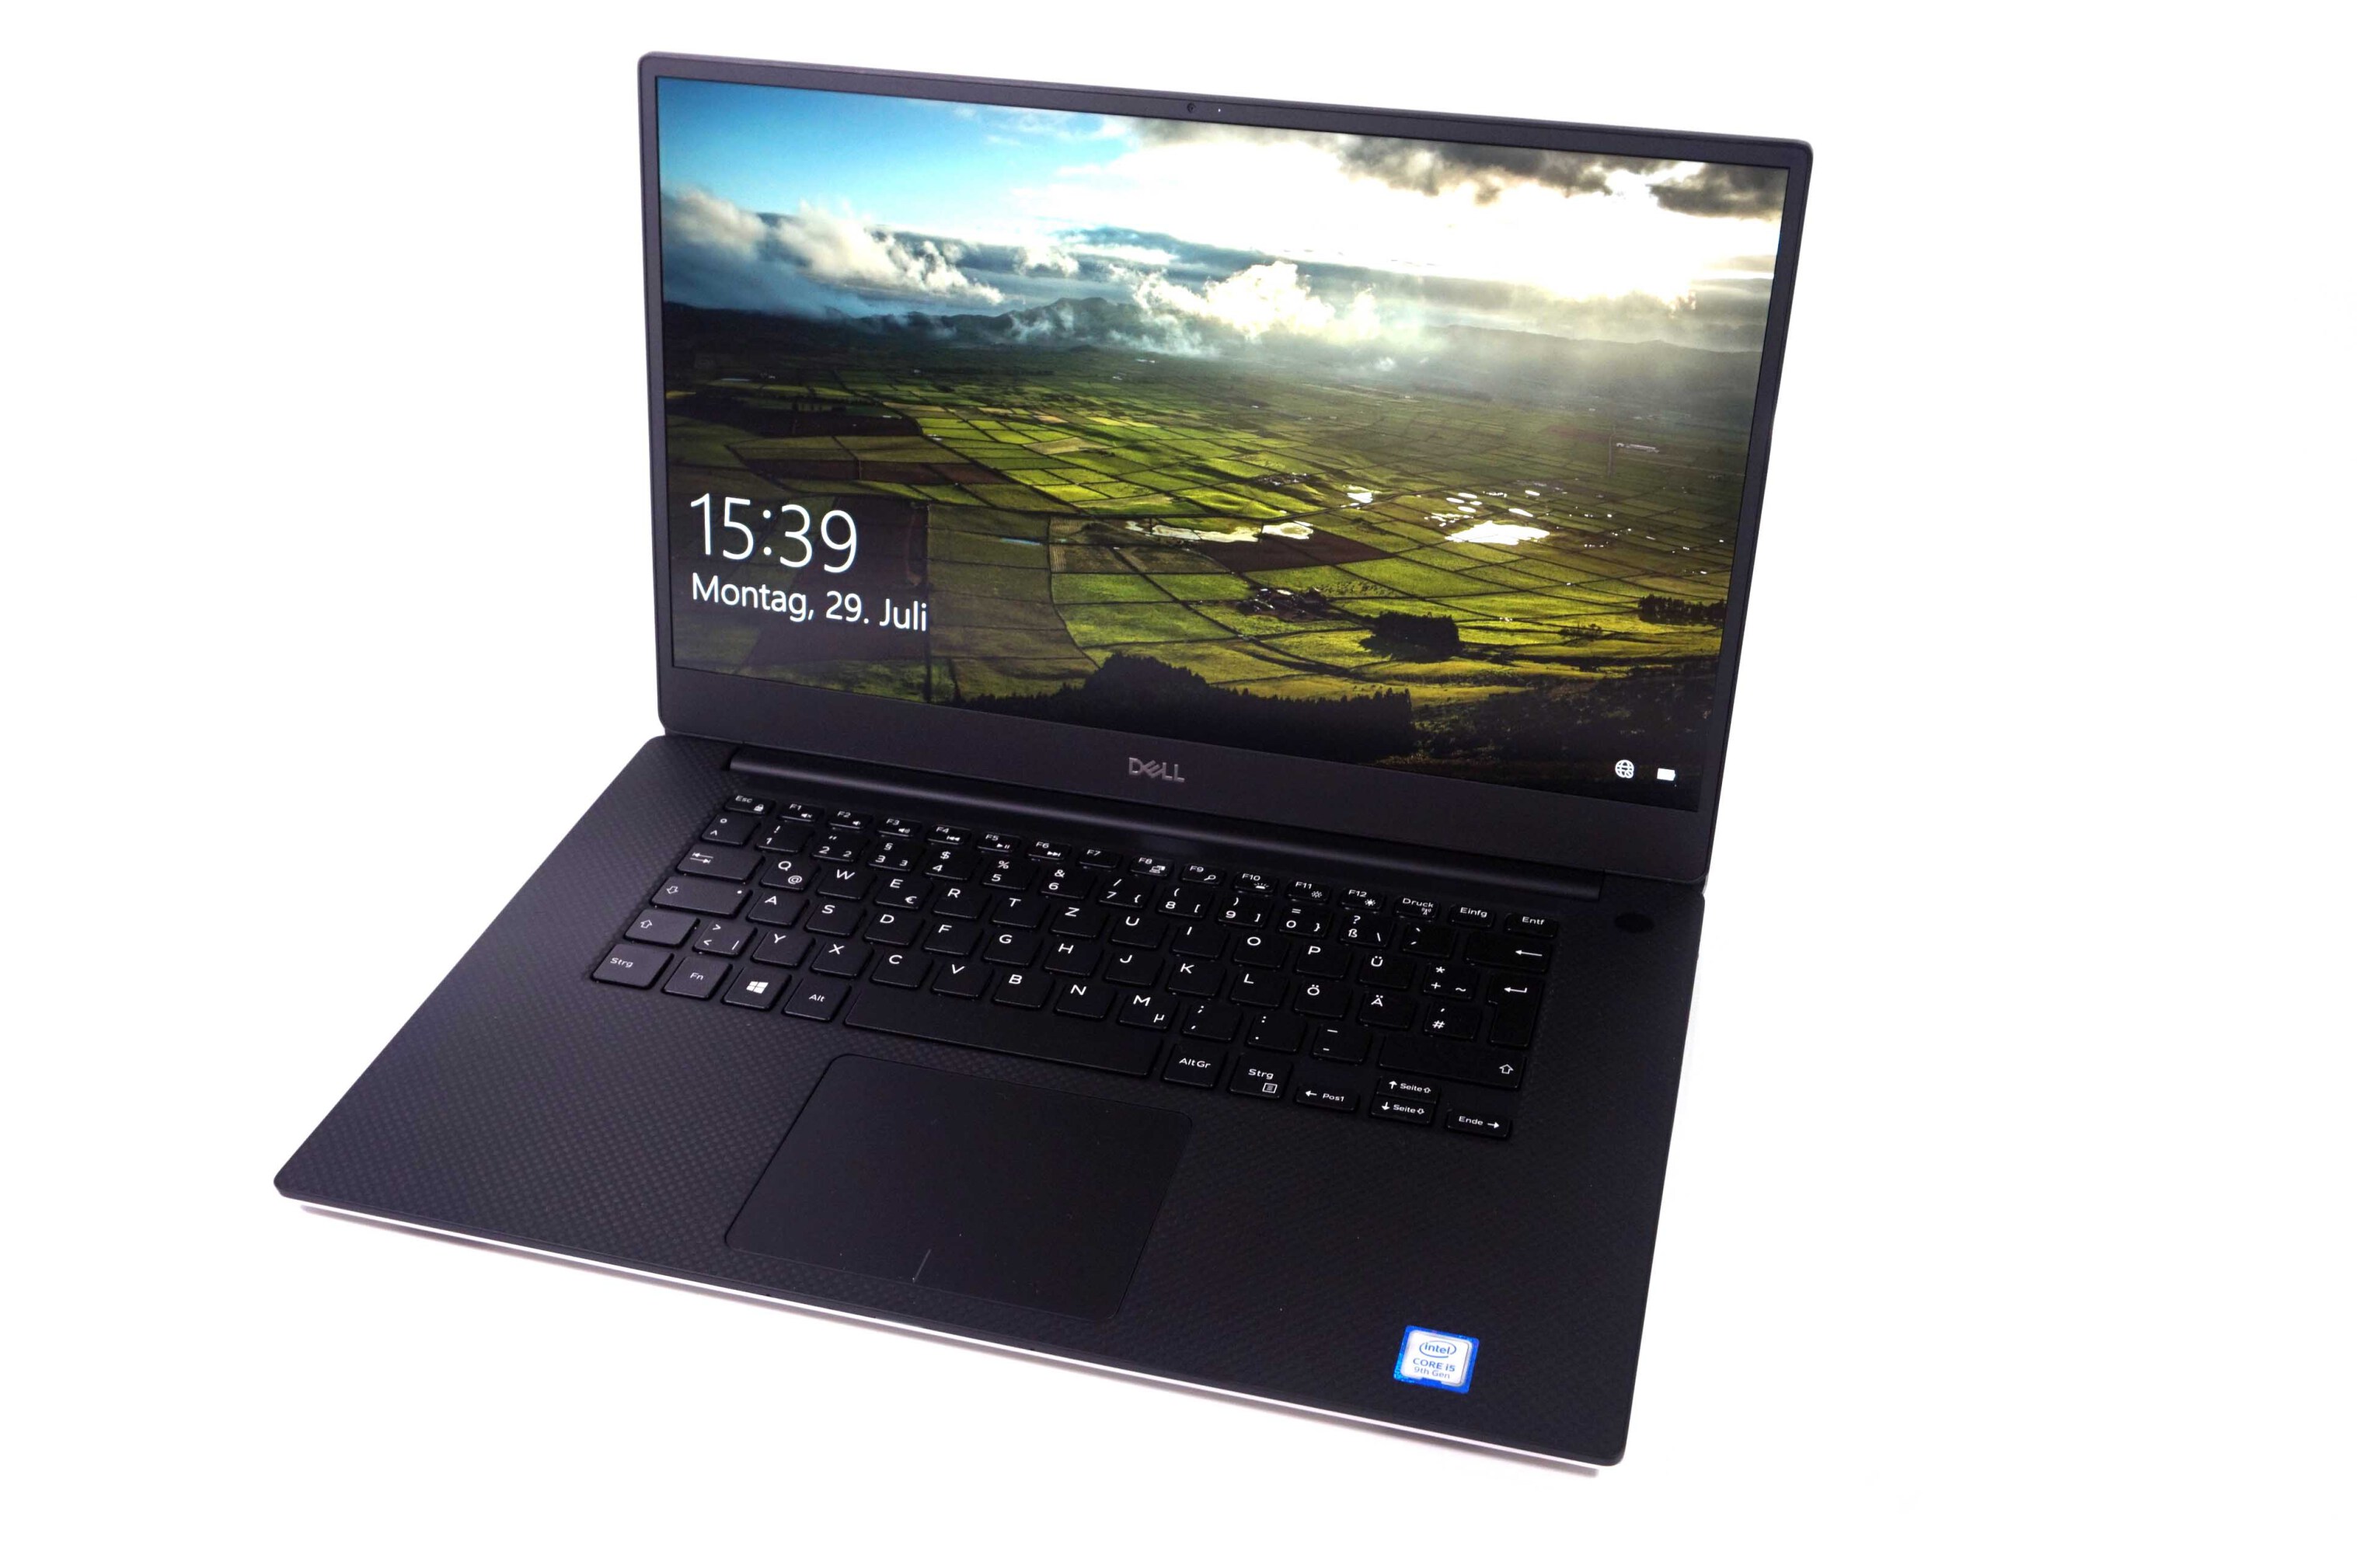  لپ تاپ Dell Xps 15 7590 با پردازنده نسل نهم | لپ تاپ Dell Xps 15 7590 با صفحه نمایش 4K لمسی | لاکچری لپ تاپ 